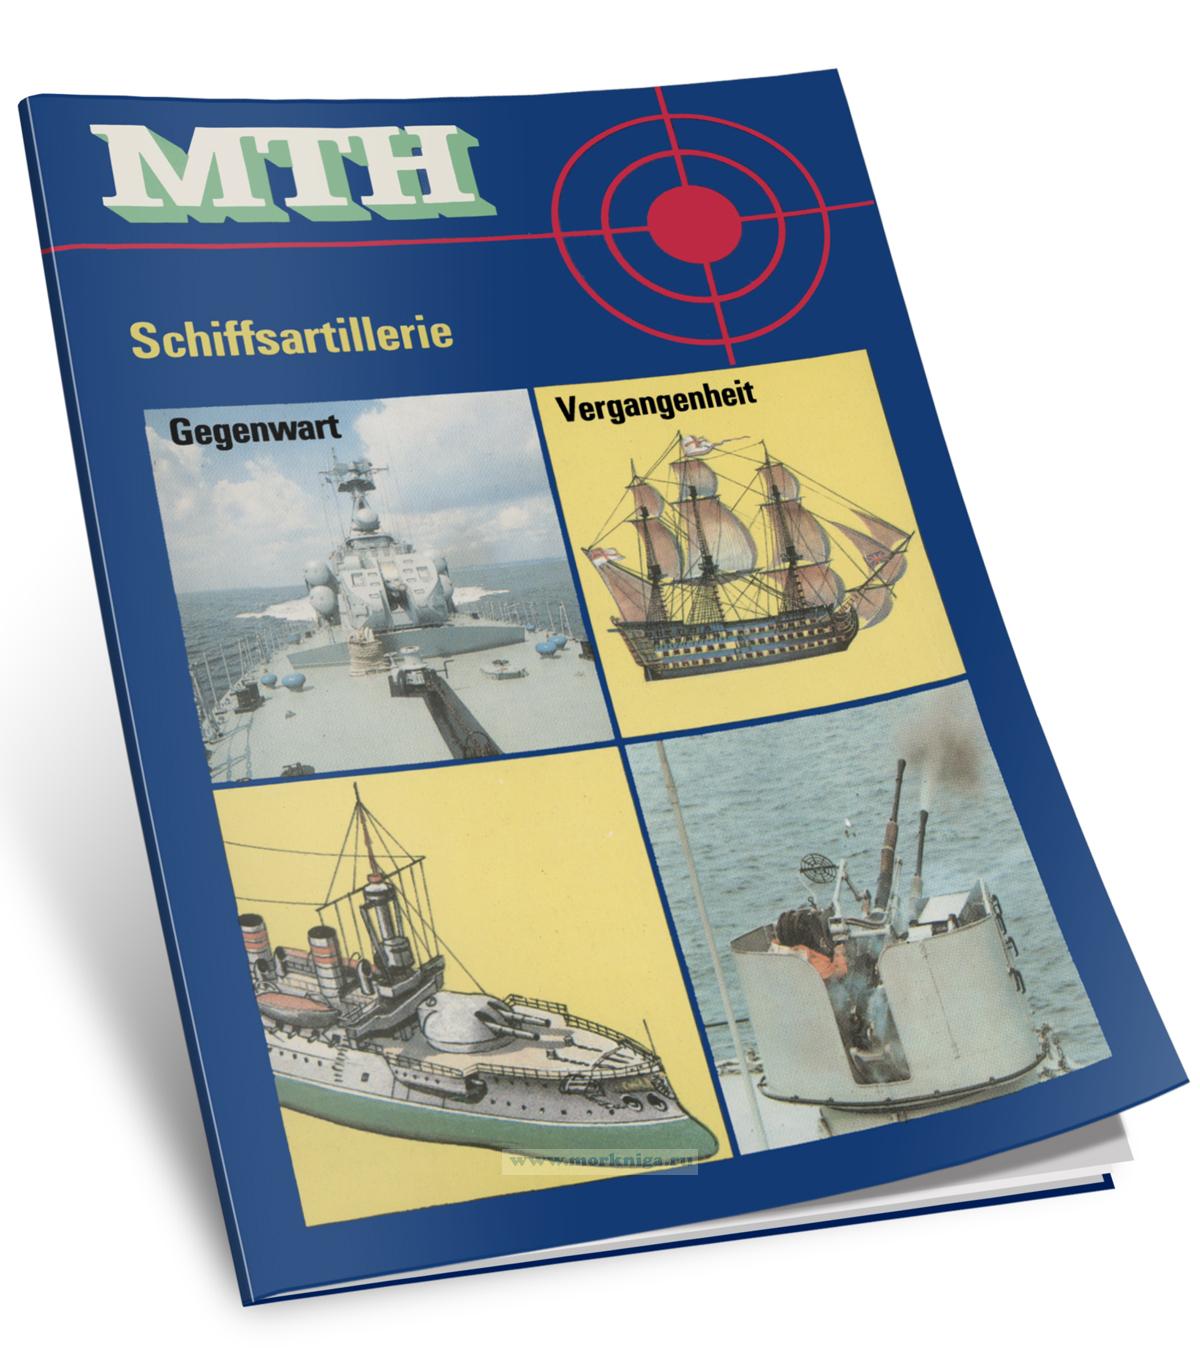 Militar Technische Hefte. Schiffsartillerie/Военно-технический справочник. Корабельная артиллерия